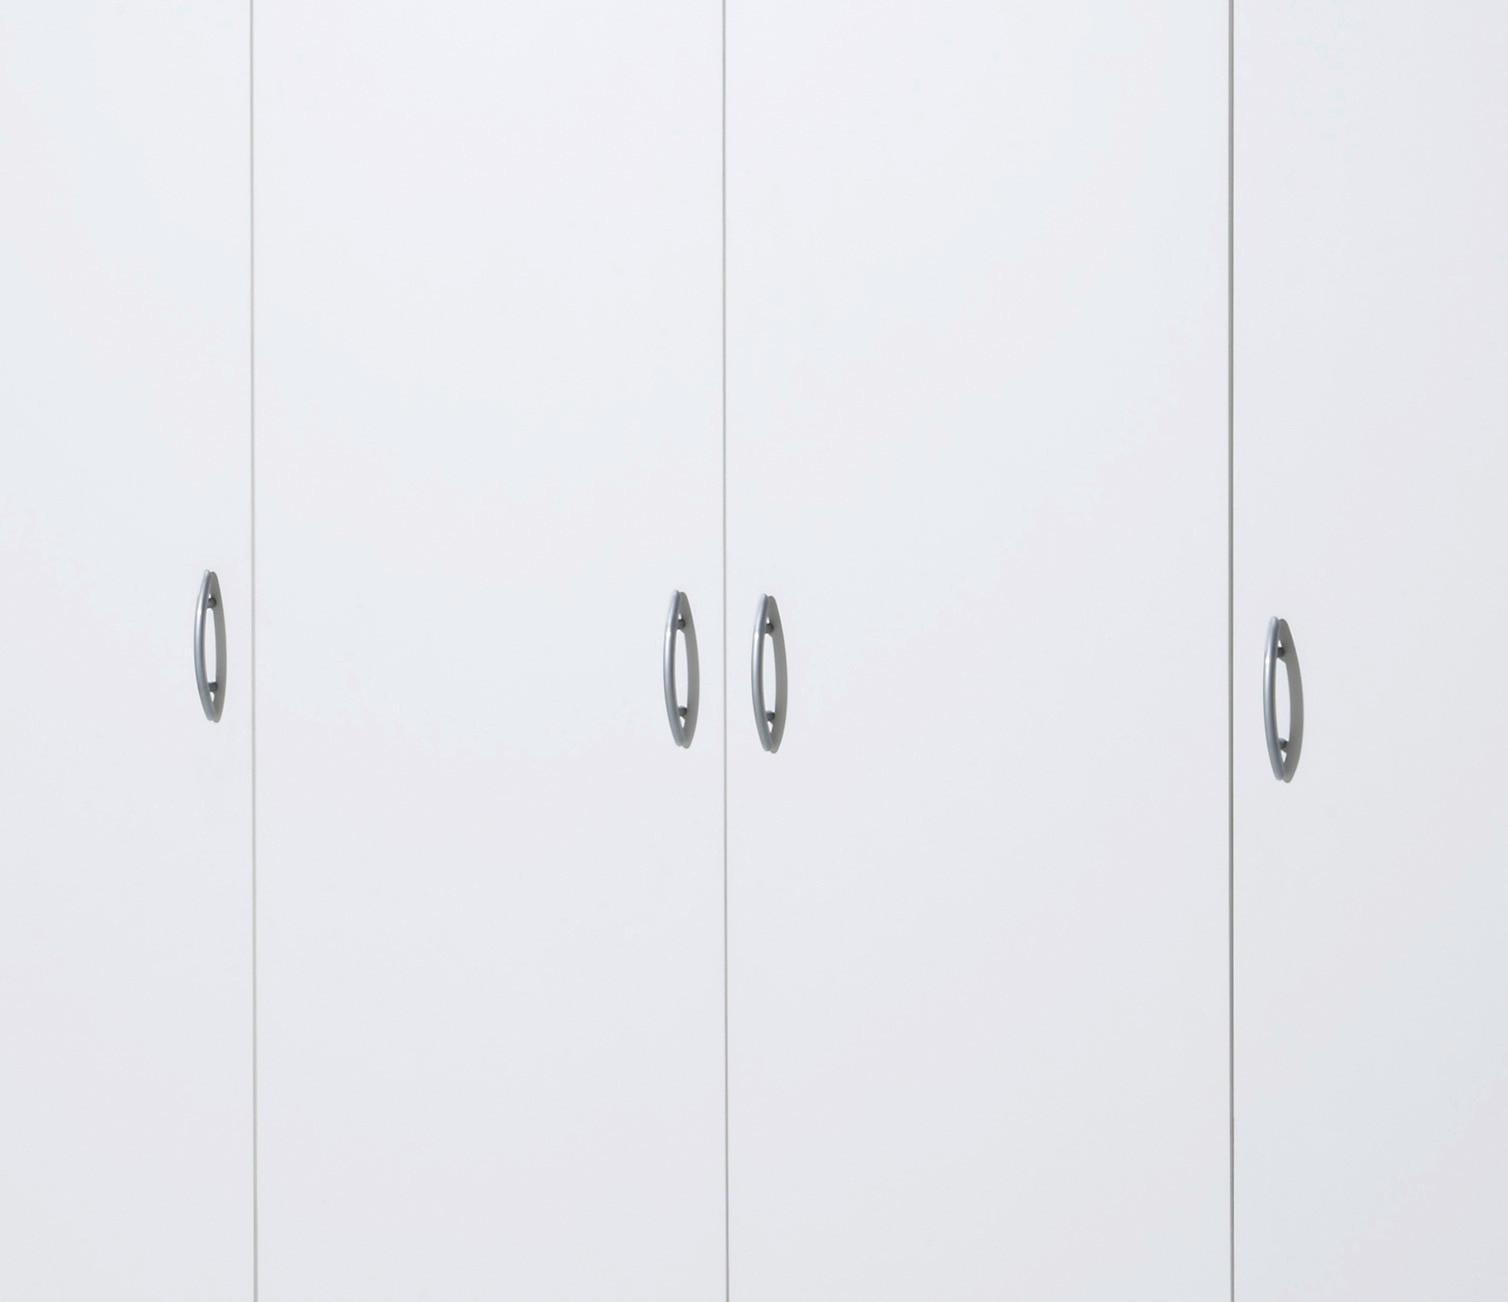 Ormar S Klasičnim Vratima Base 4 - bijela/boje hrasta, Konventionell, drvni materijal/plastika (161/176/53cm) - Based